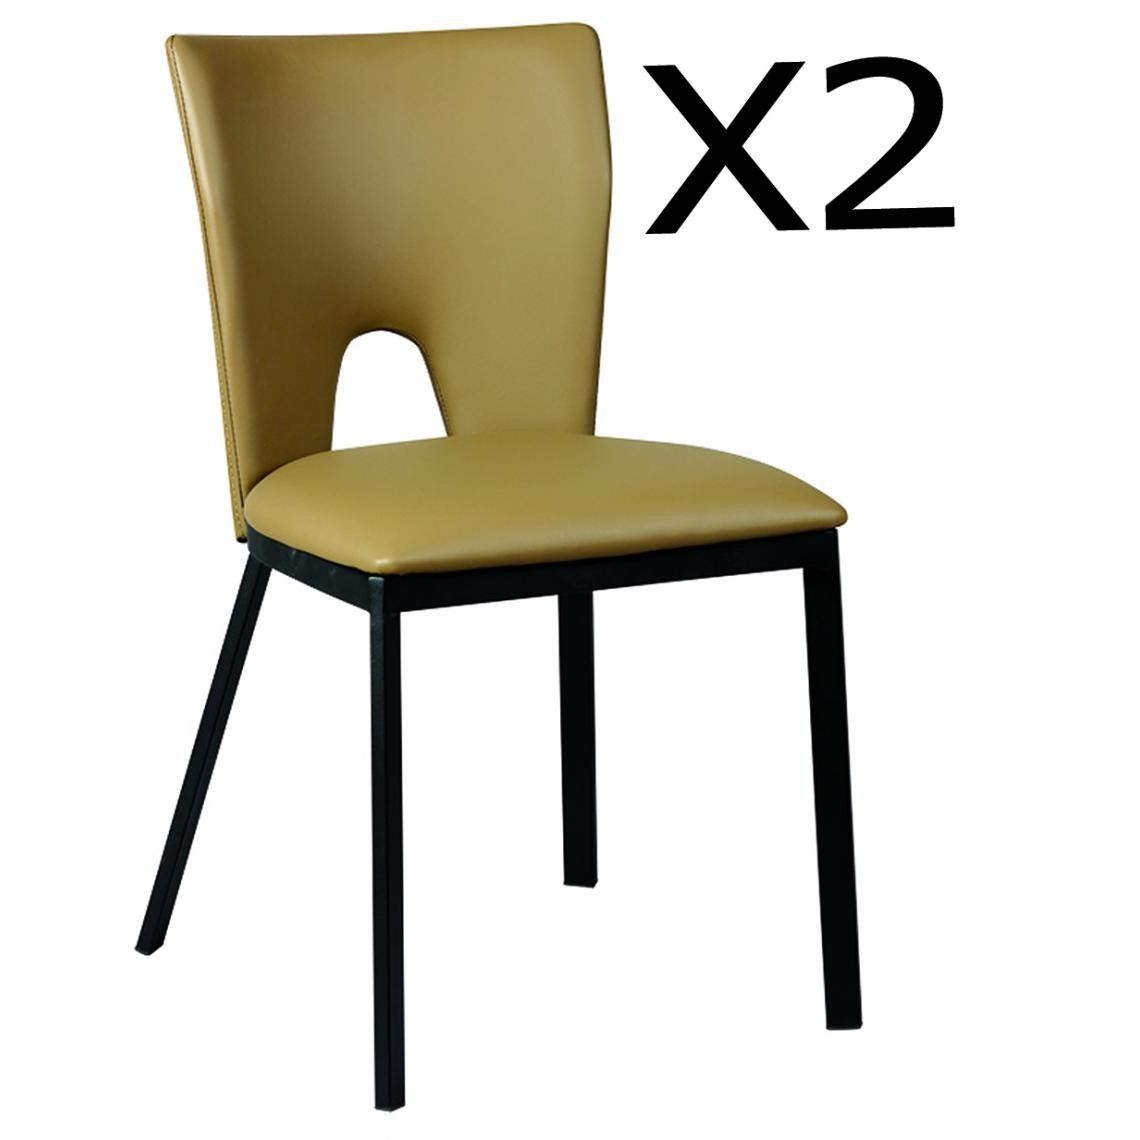 Pegane - Lot de 2 chaises en acier et polypropylène, coloris taupe - Dim : L.45 x P.50 x Ht.81 x Ht Ass. 47 cm - Chaises